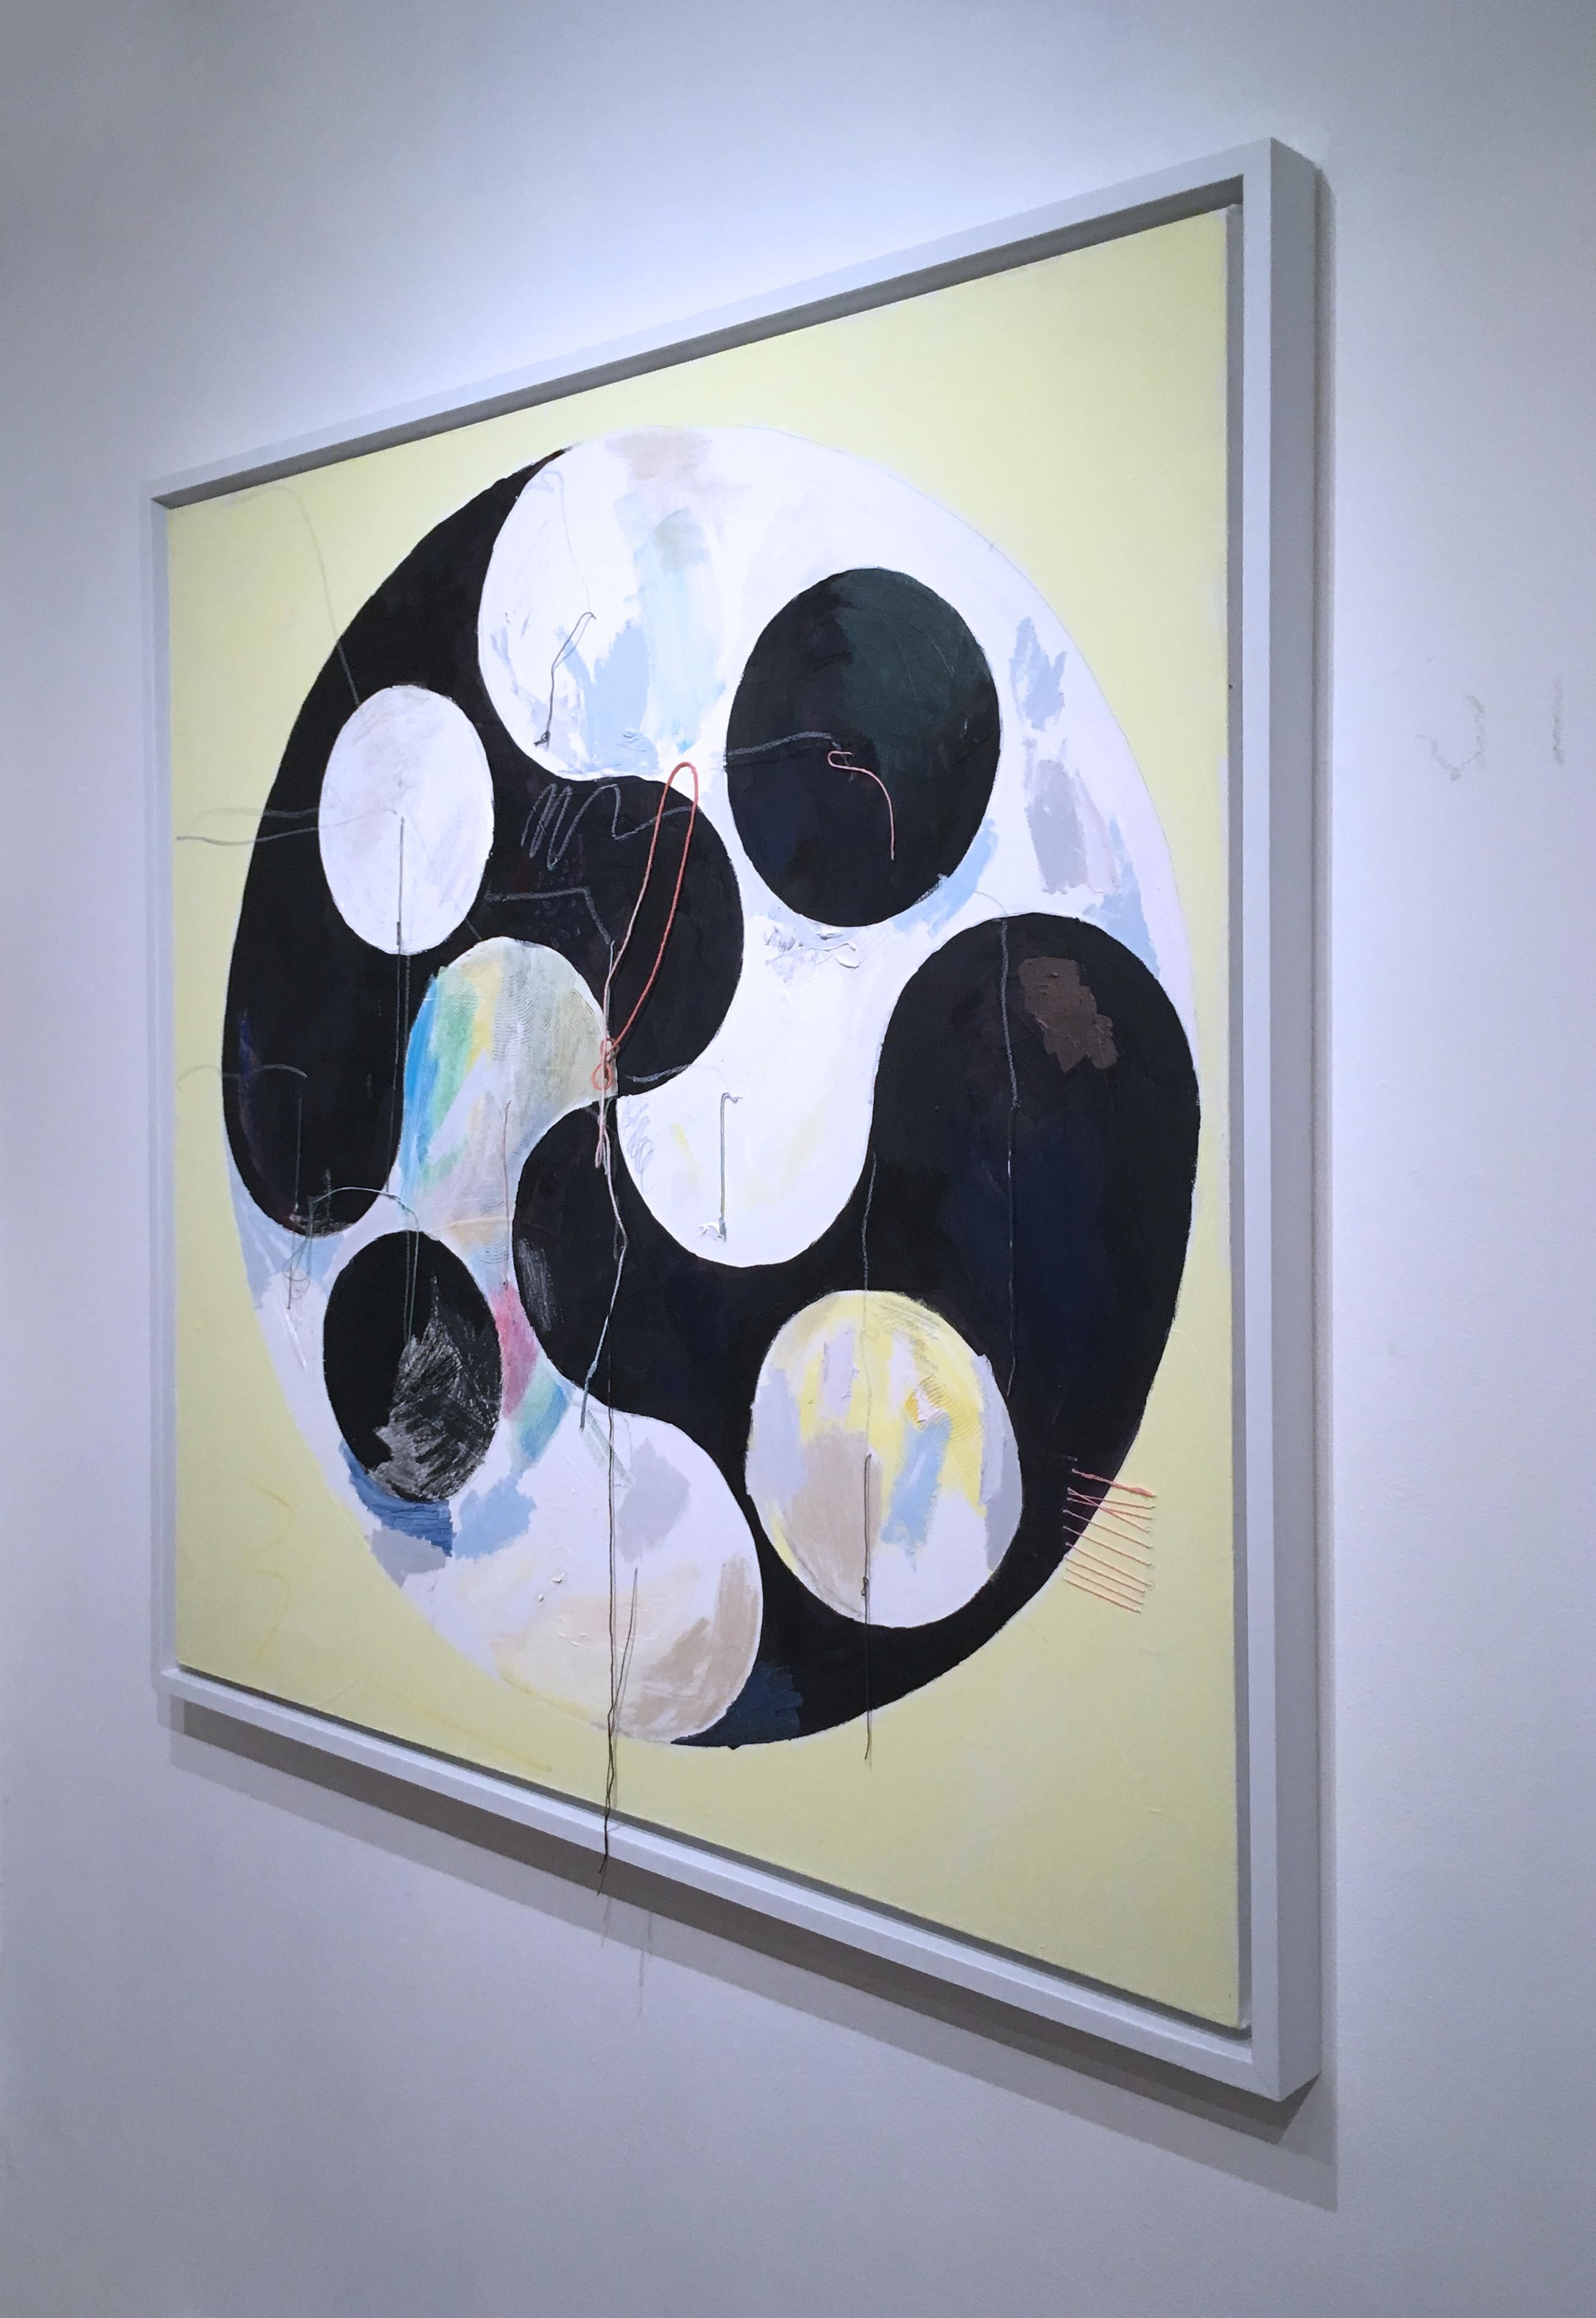 Yin Yang, 2020, acrylique, huile, toile, fil, noir, jaune, abstrait - Contemporain Painting par Macauley Norman